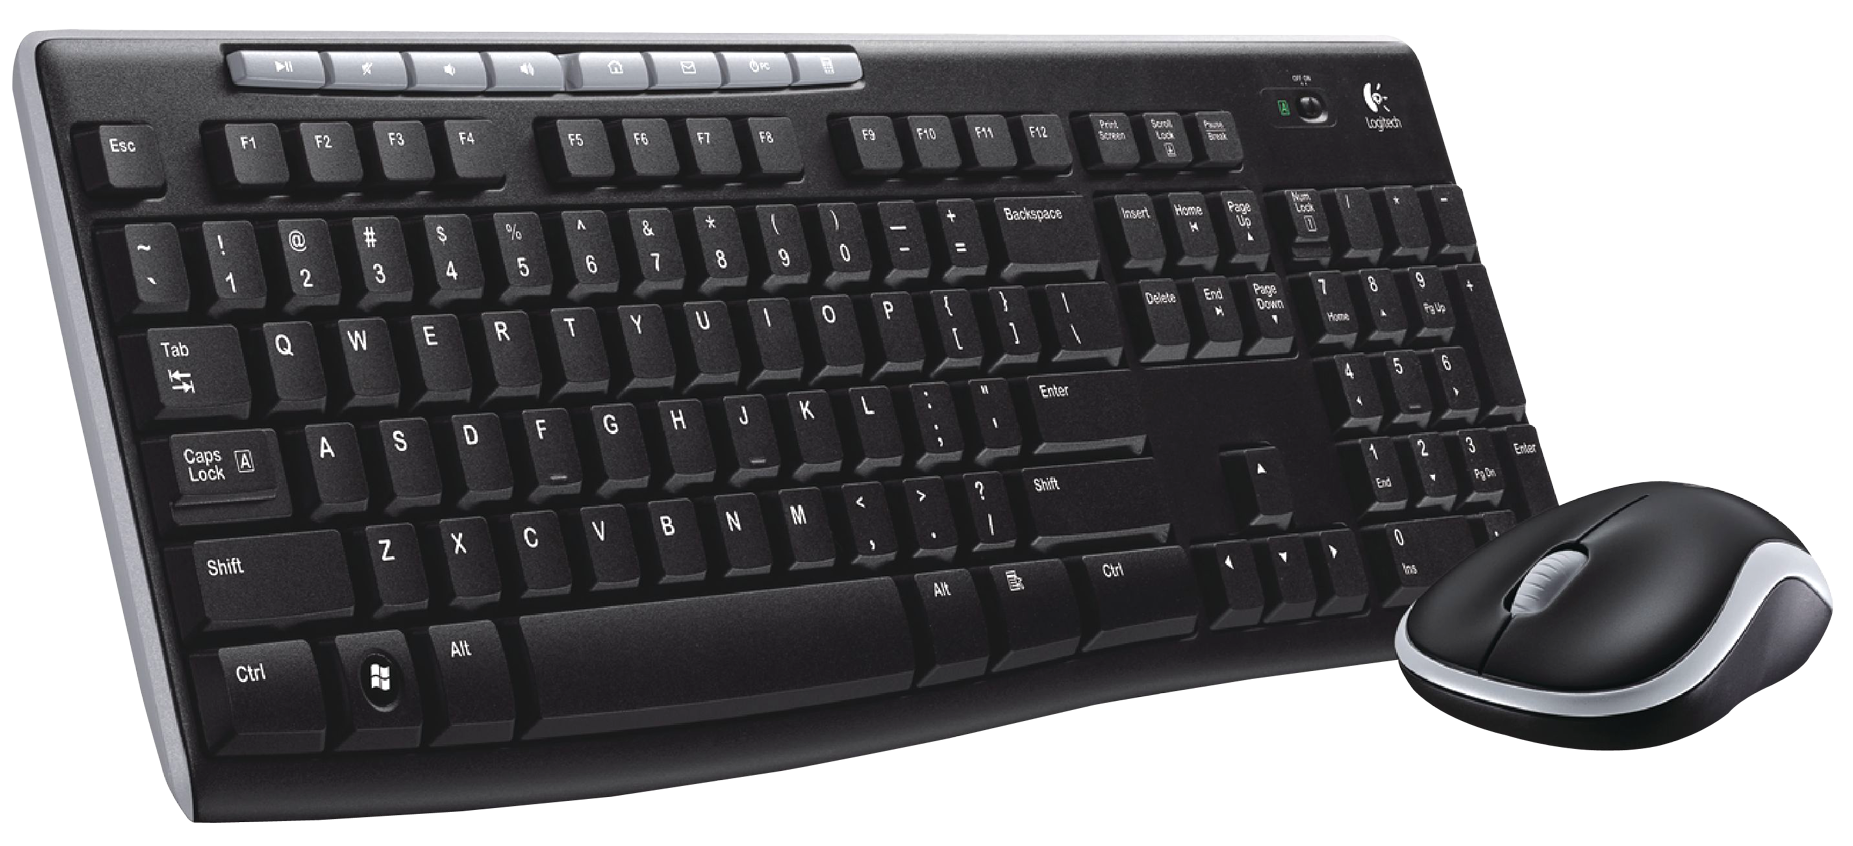 Keyboard Mouse Png - KibrisPDR